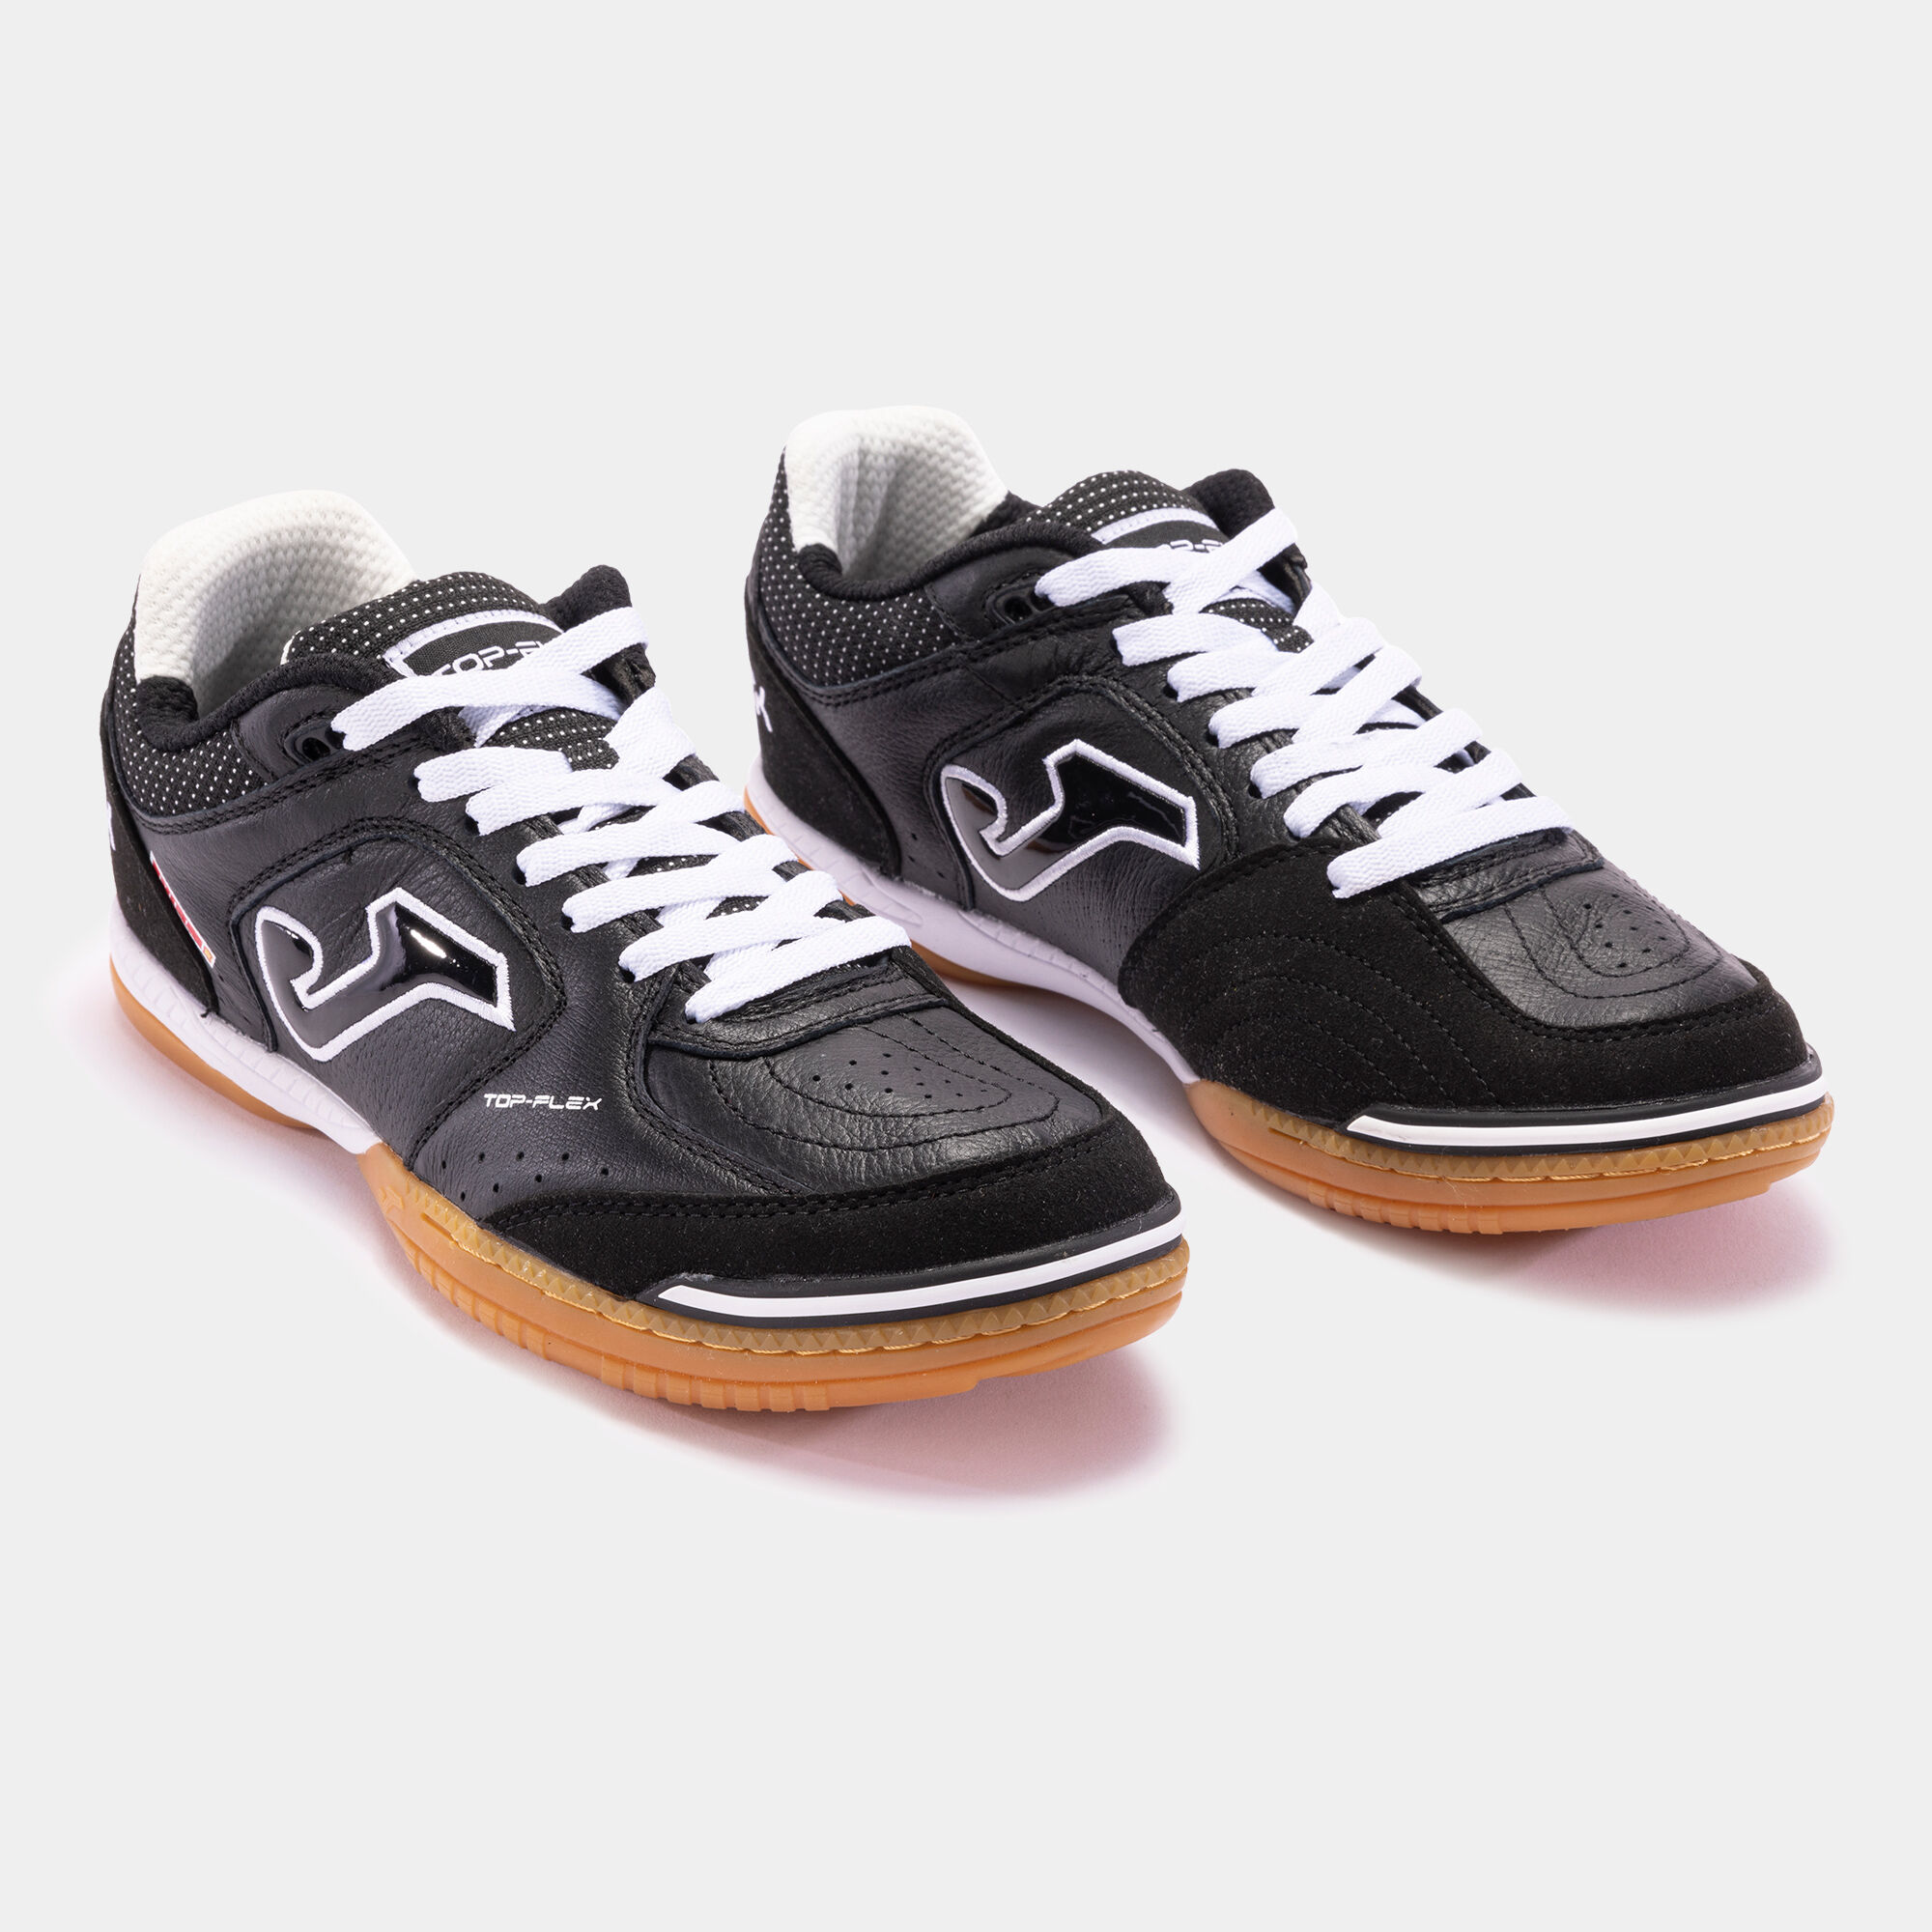 Chaussures futsal Top Flex 21 indoor noir